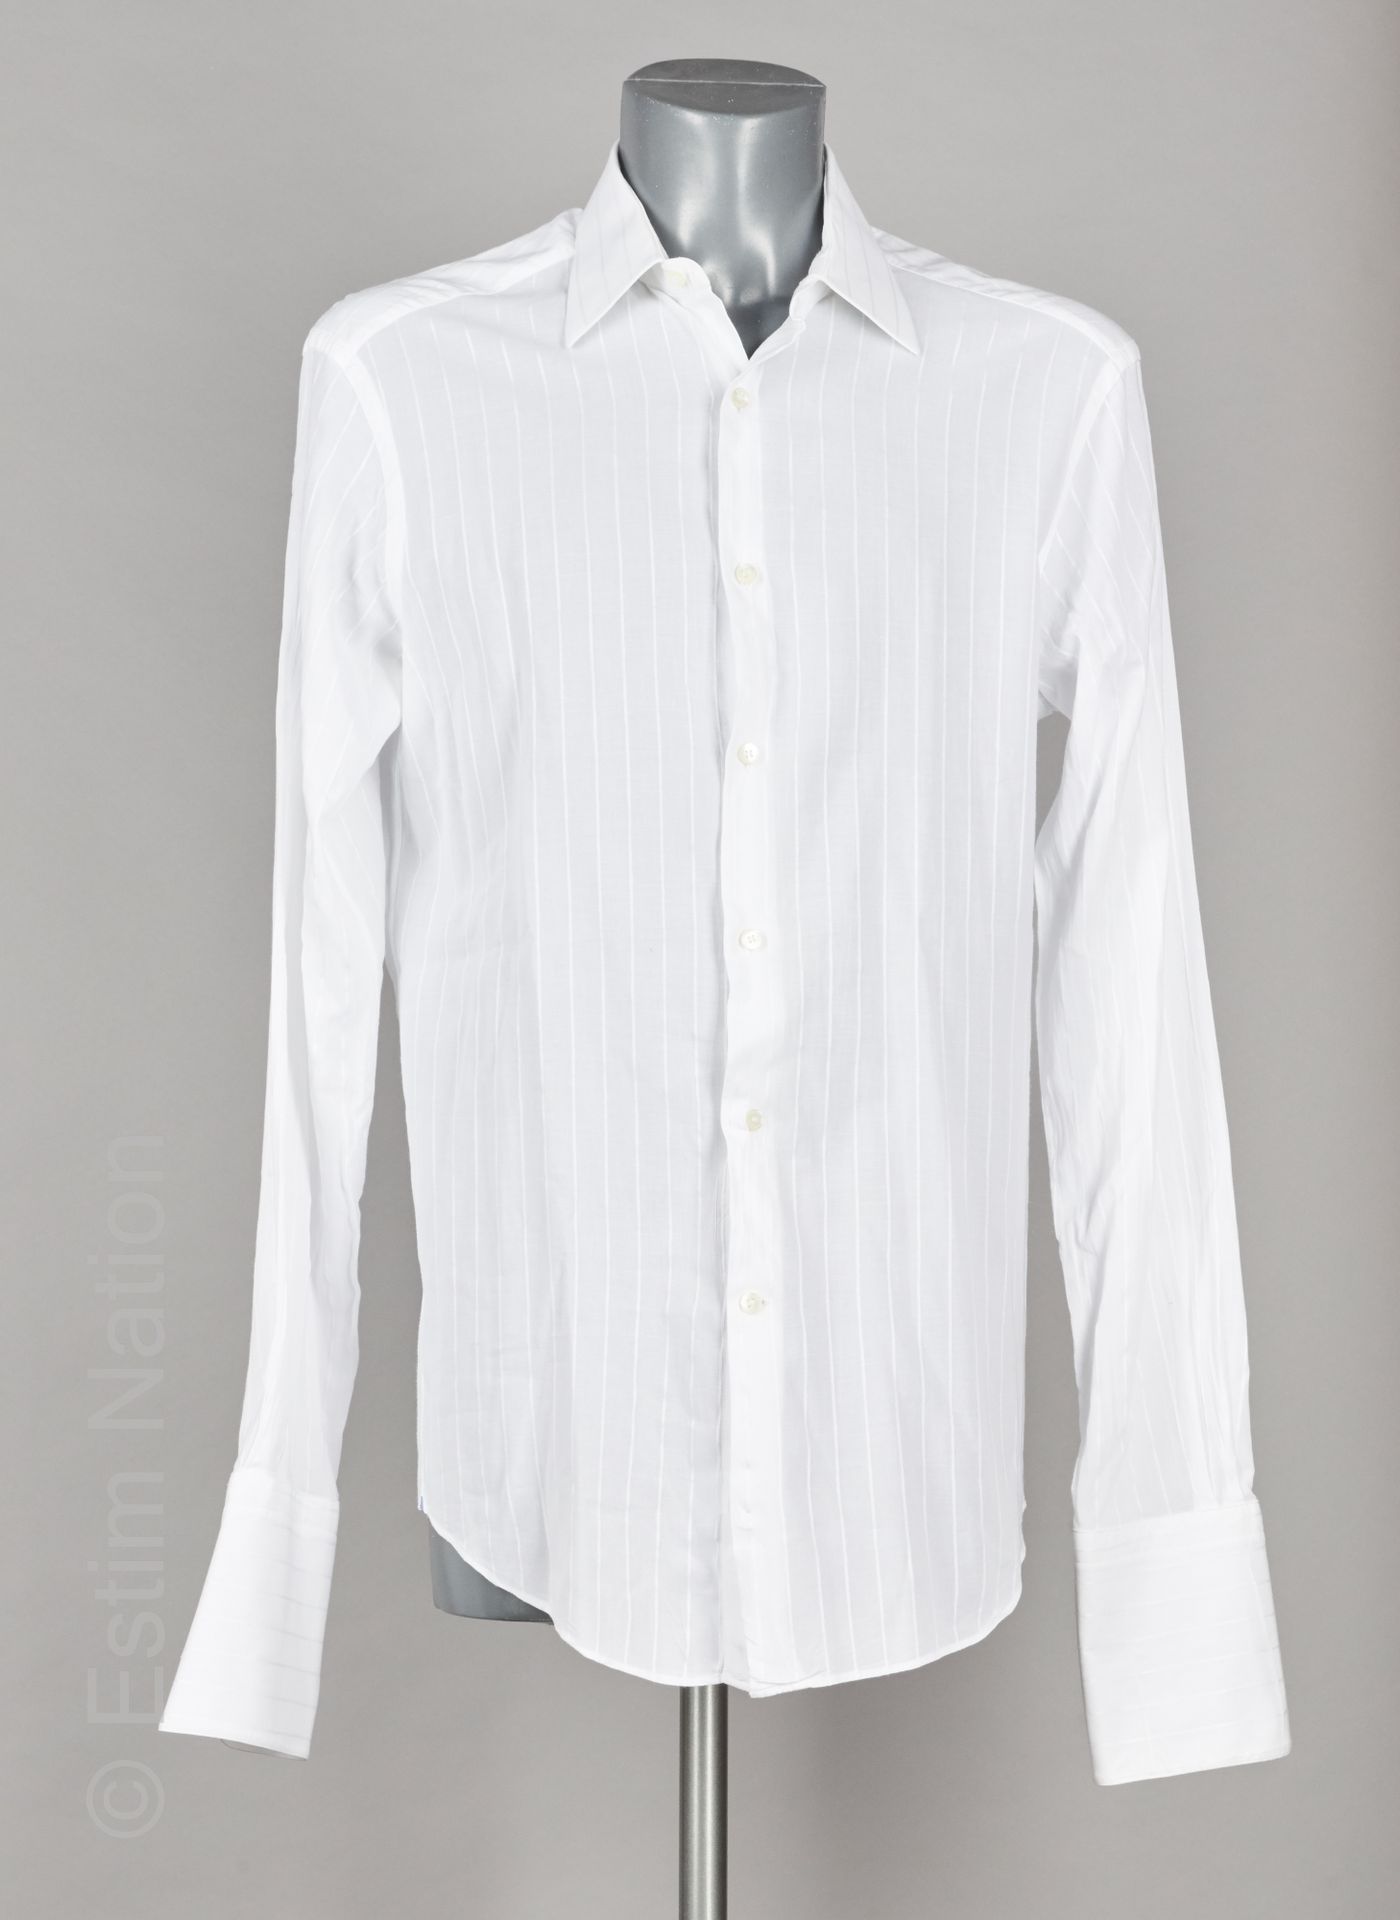 LANVIN, LANVIN TRADITION, LANVIN CLASSIQUE 五件棉质衬衫：三件白色，两件格子（T 15 3/4 /40，T 16/41&hellip;